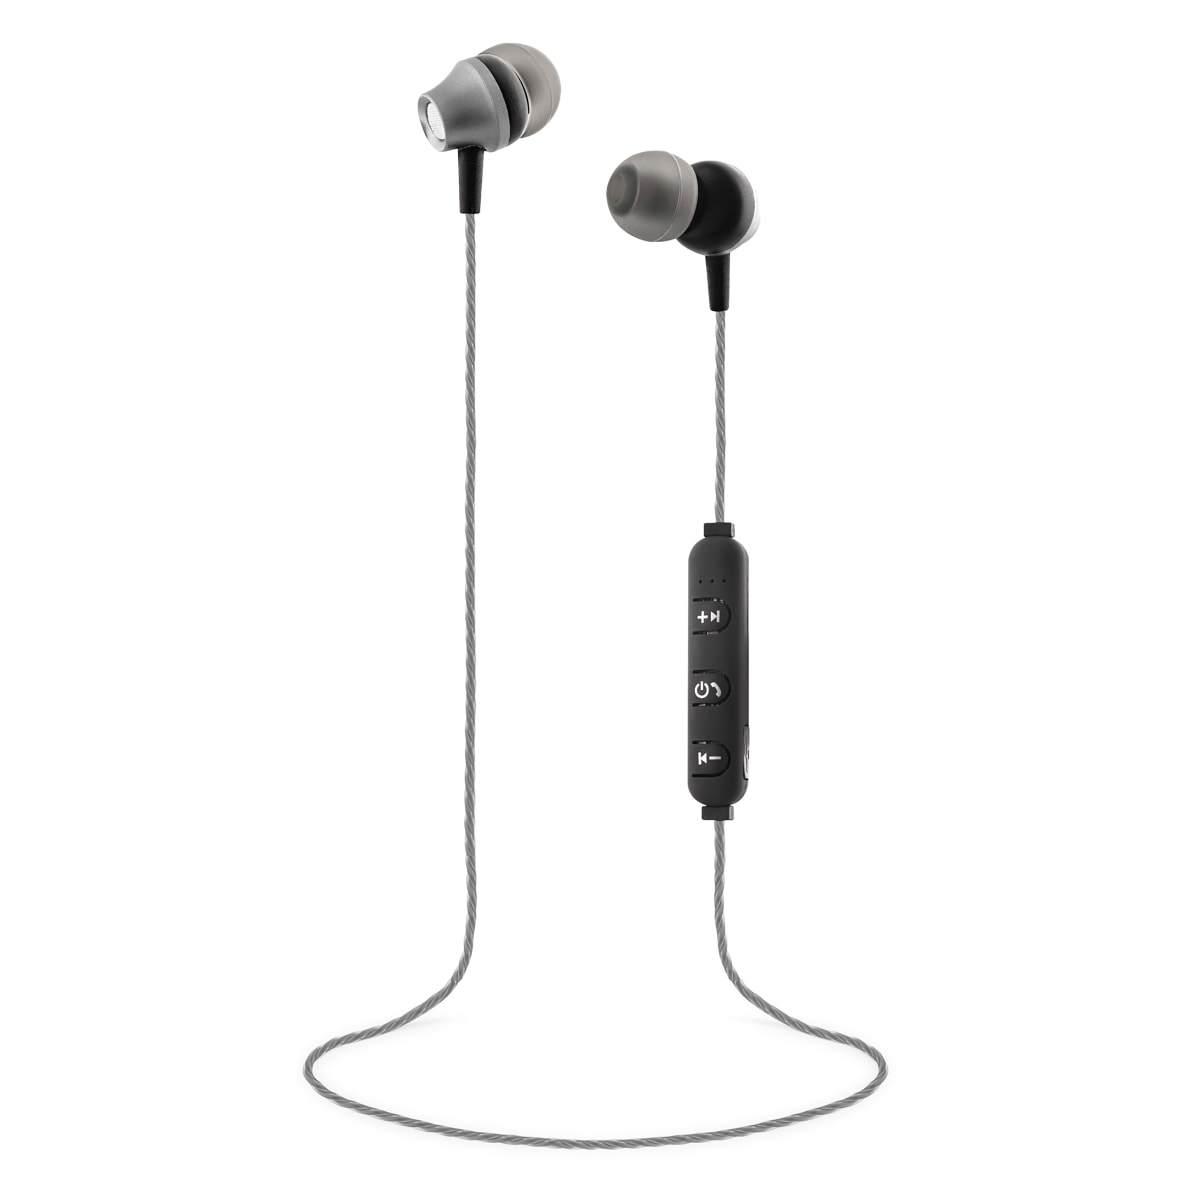 Bluetooth earphones STEEL grey